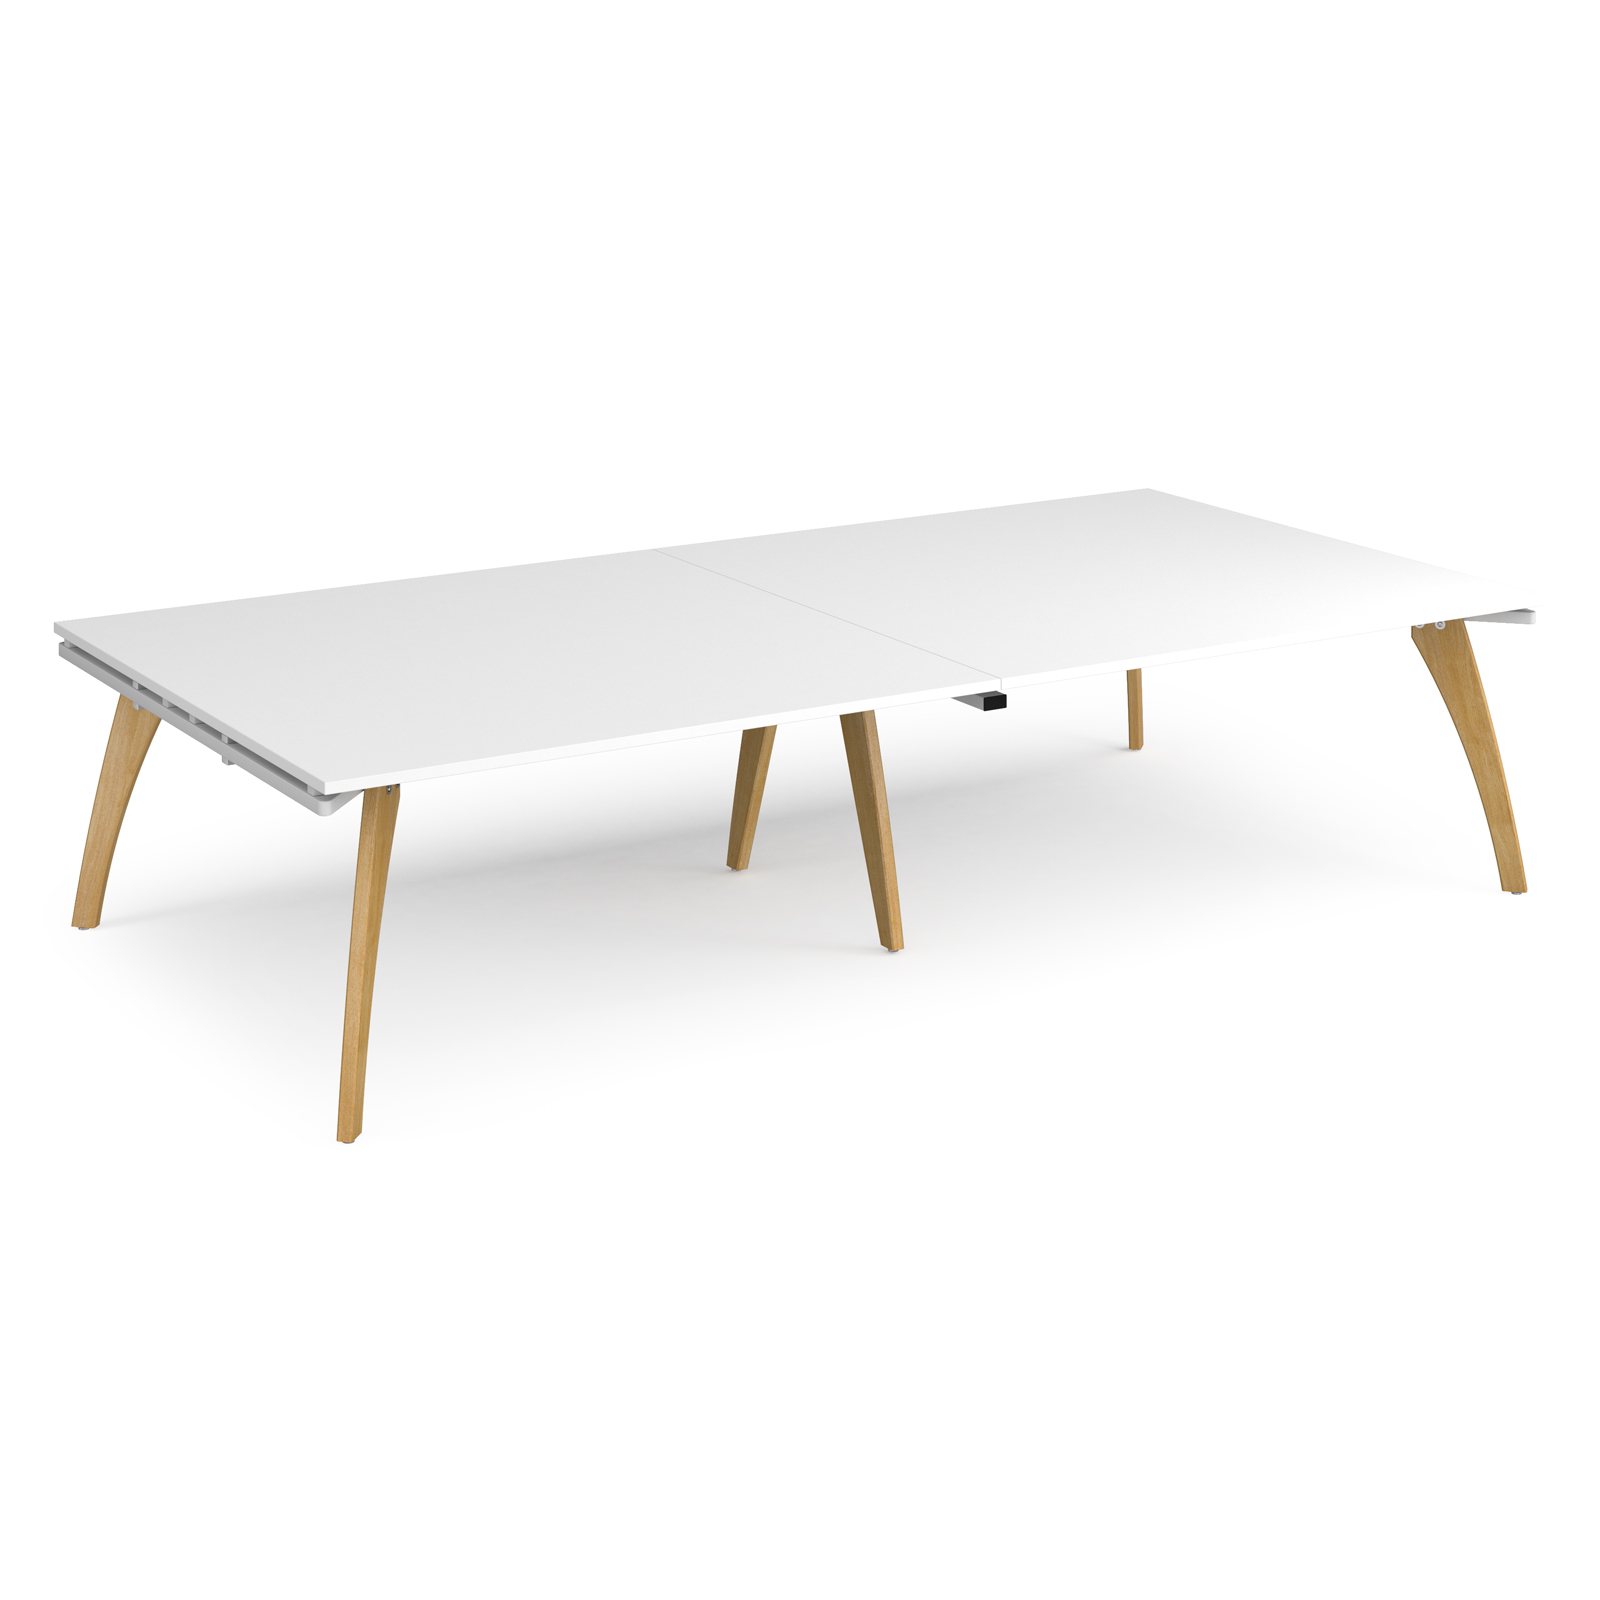 Fuze rectangular boardroom table 3200mm x 1600mm - white frame, white top